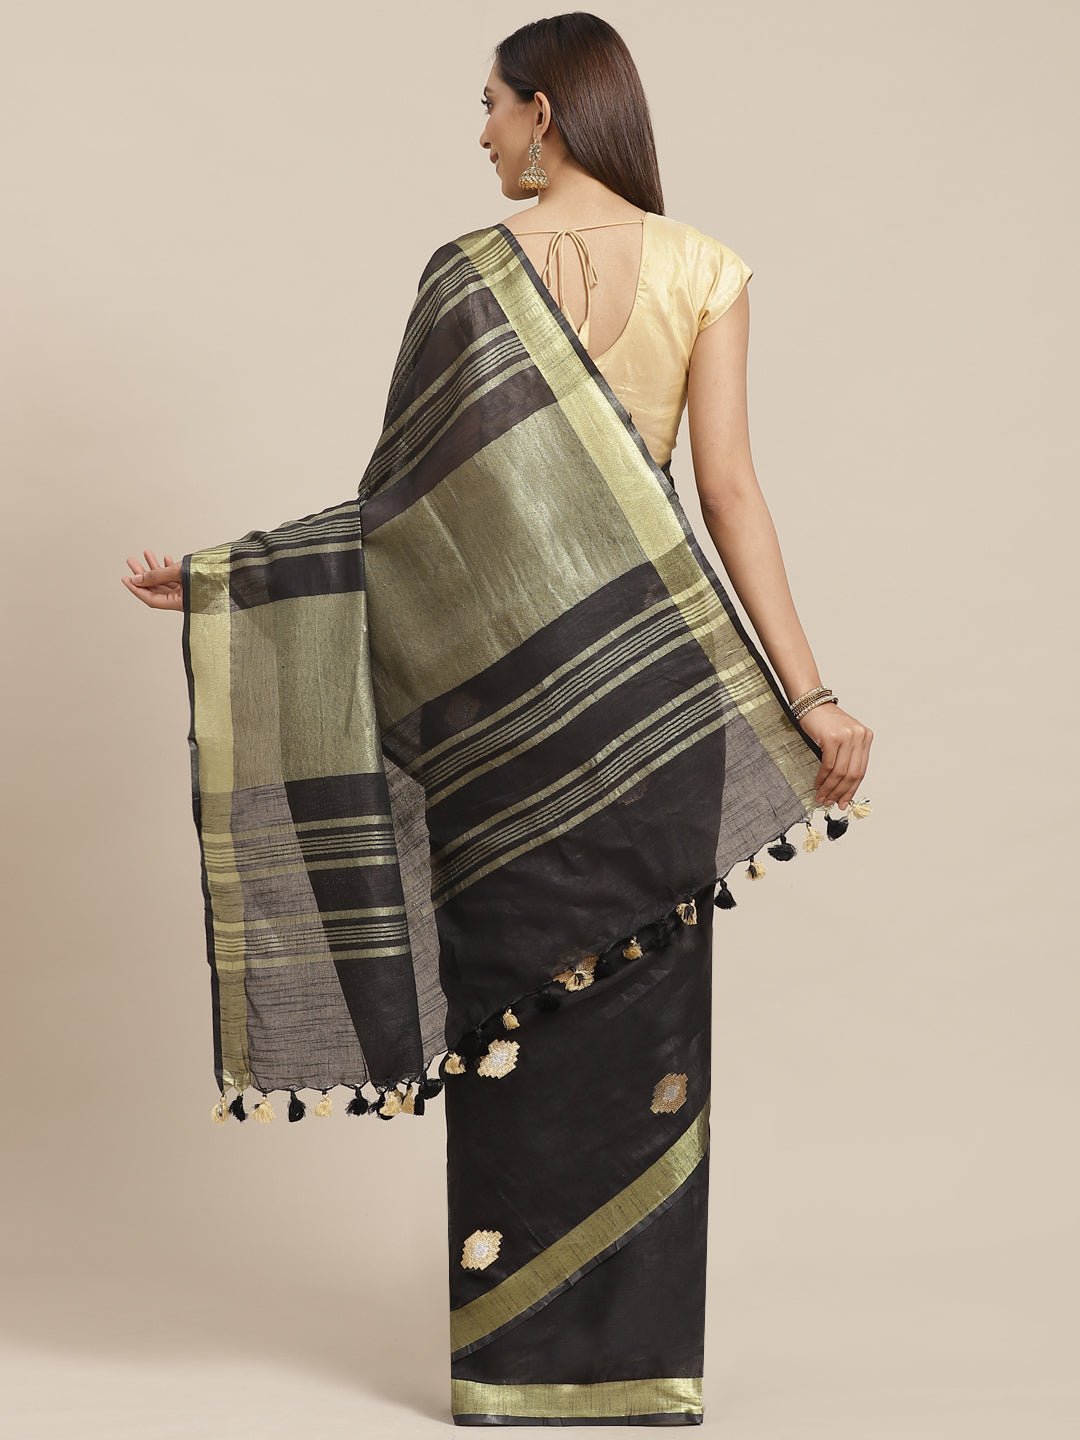 Black and Tan, Kalakari India Linen Woven Saree and Blouse ALBGSA0068 - Kalakari India